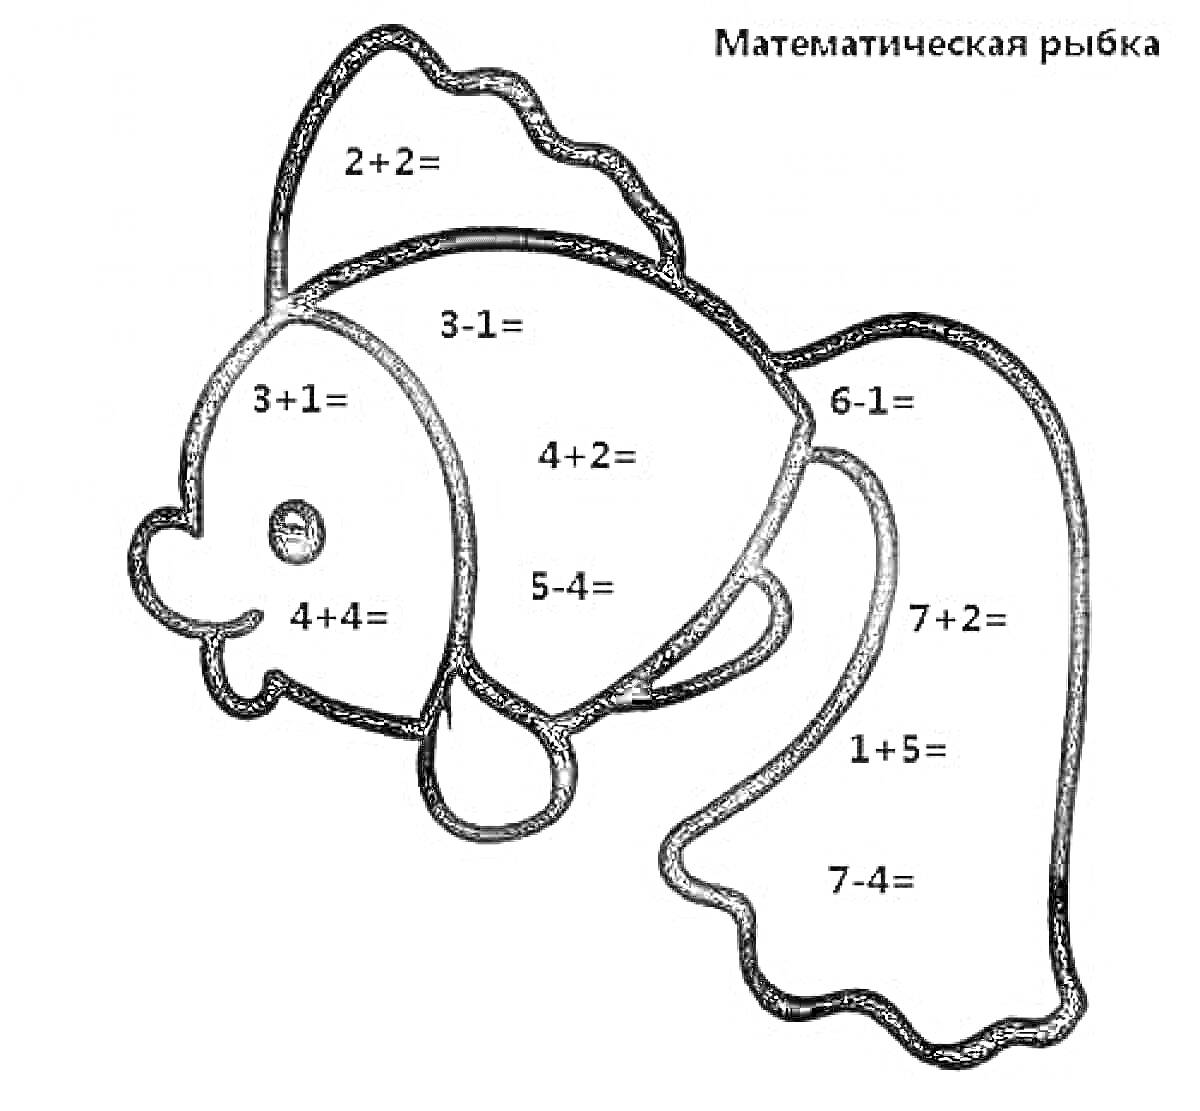 Раскраска Математическая рыбка с примерами сложения и вычитания в пределах 10